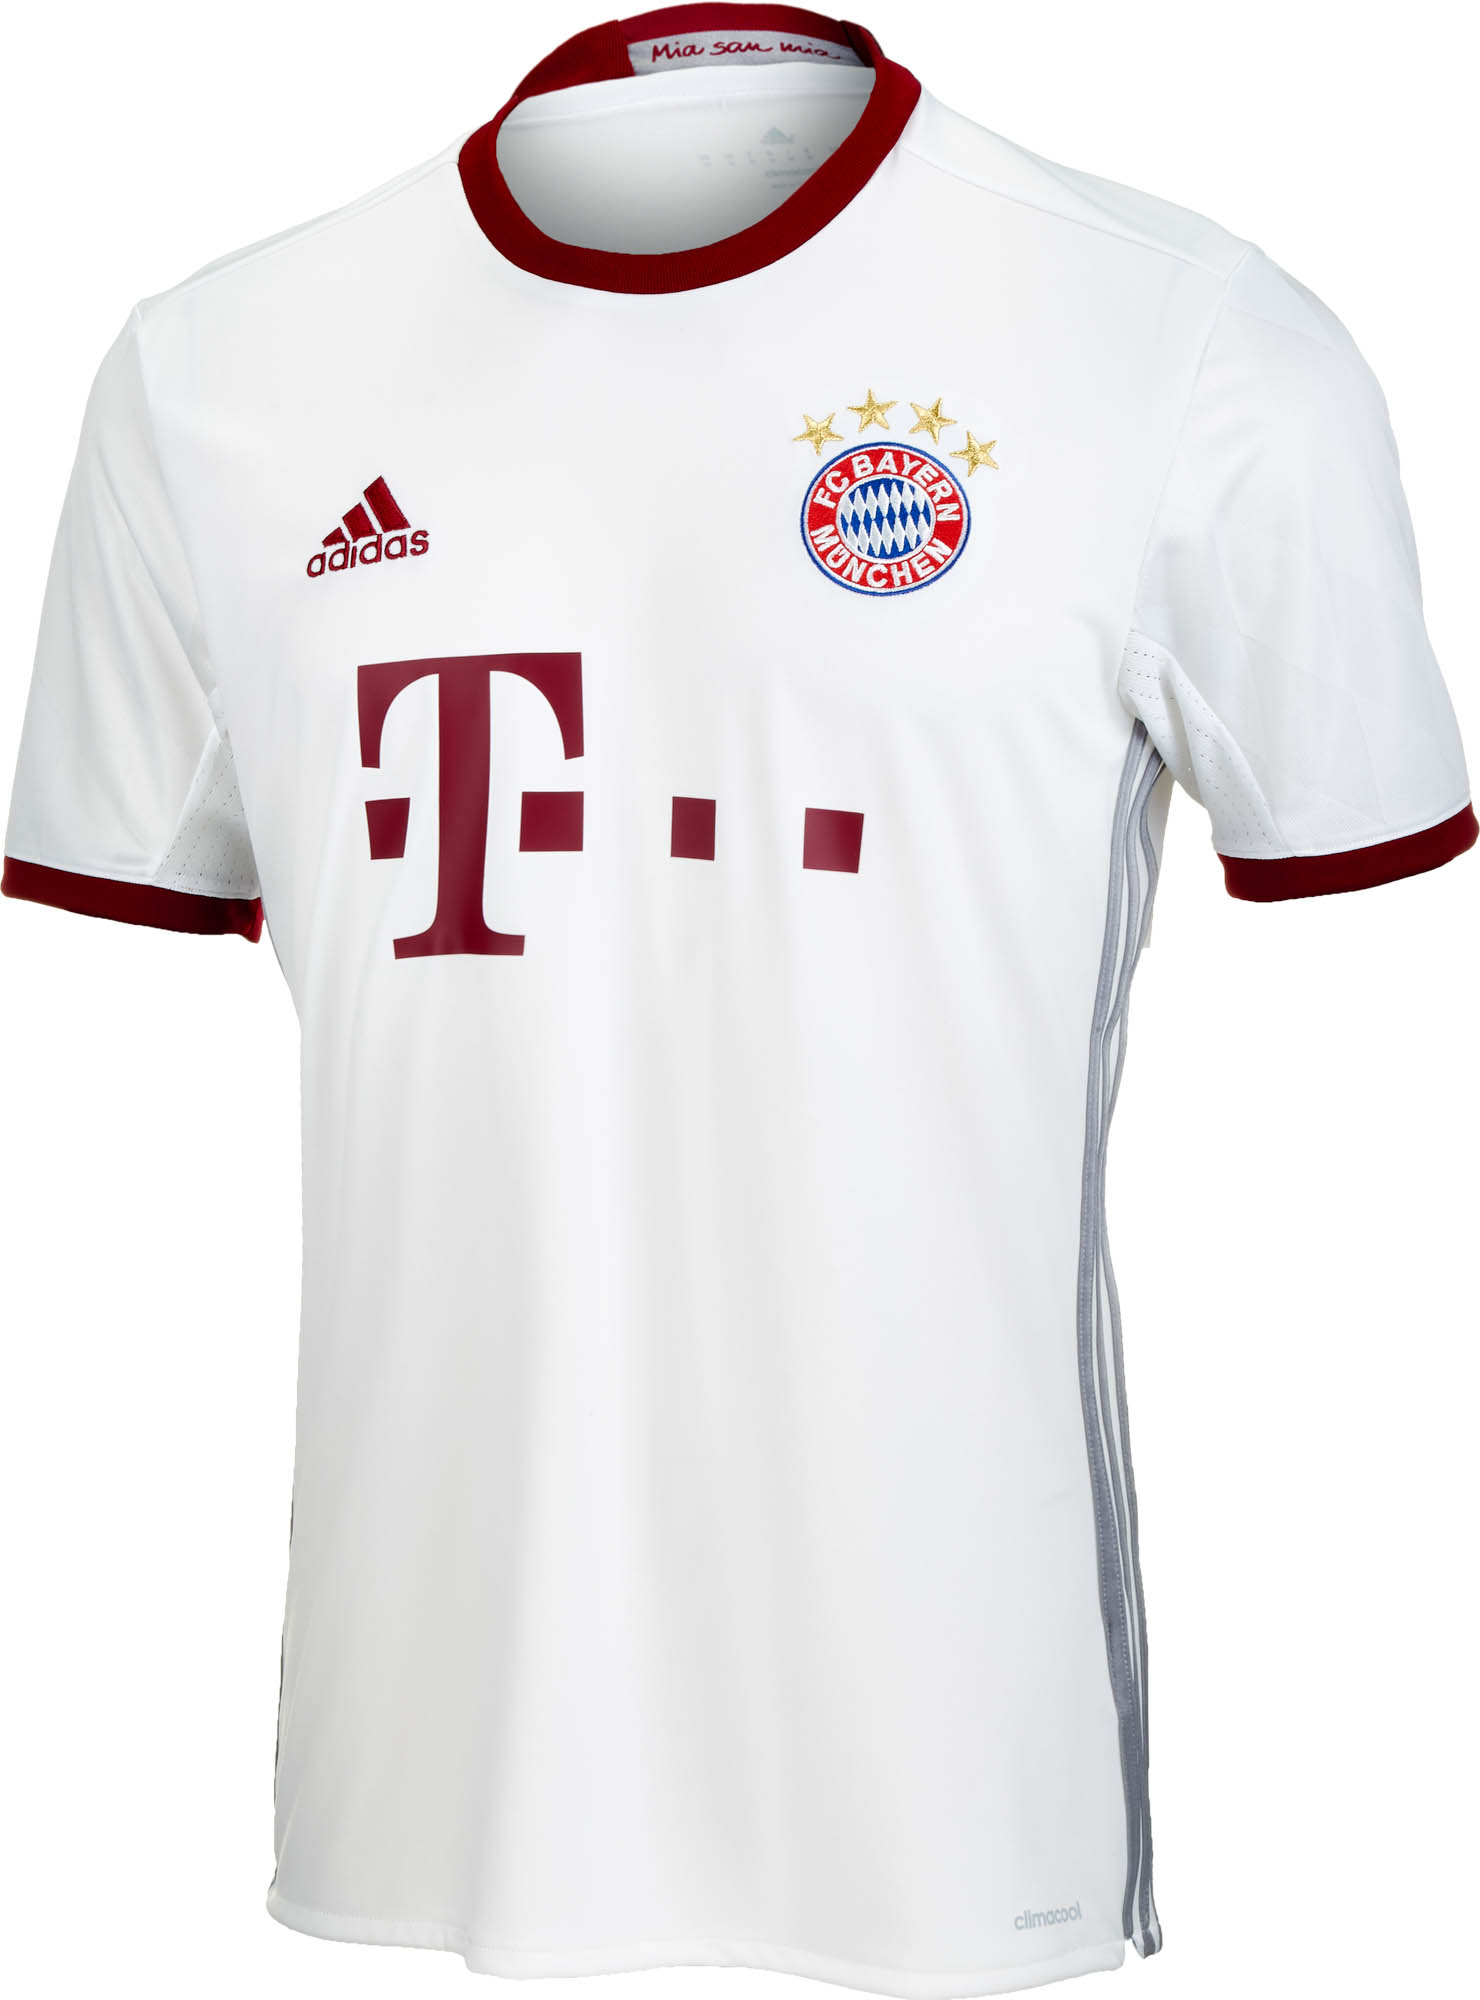 adidas Bayern Munich 3rd Jersey - 2016 Bayern Munich Soccer Jerseys